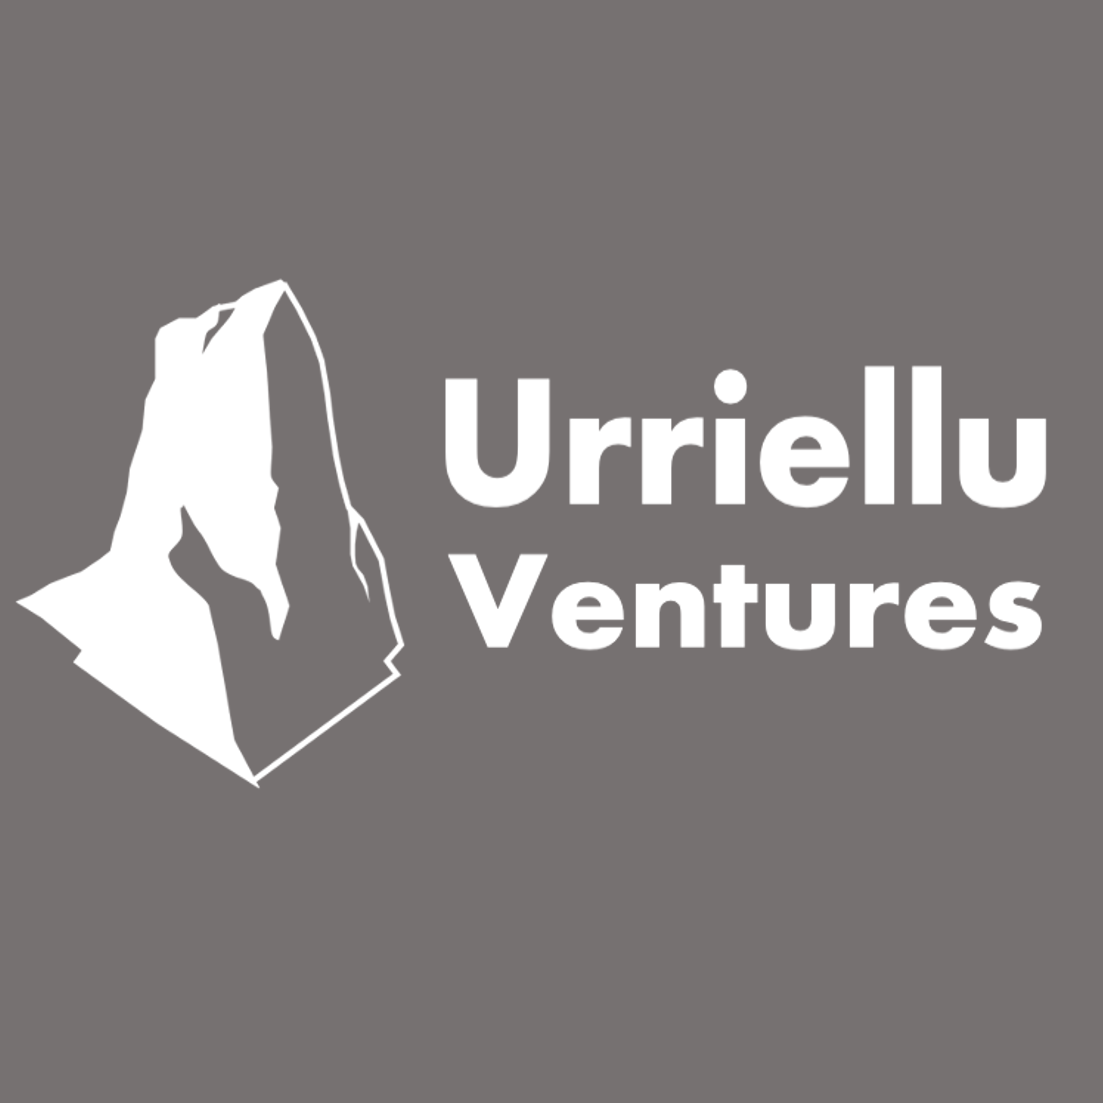 Uriellu Ventures